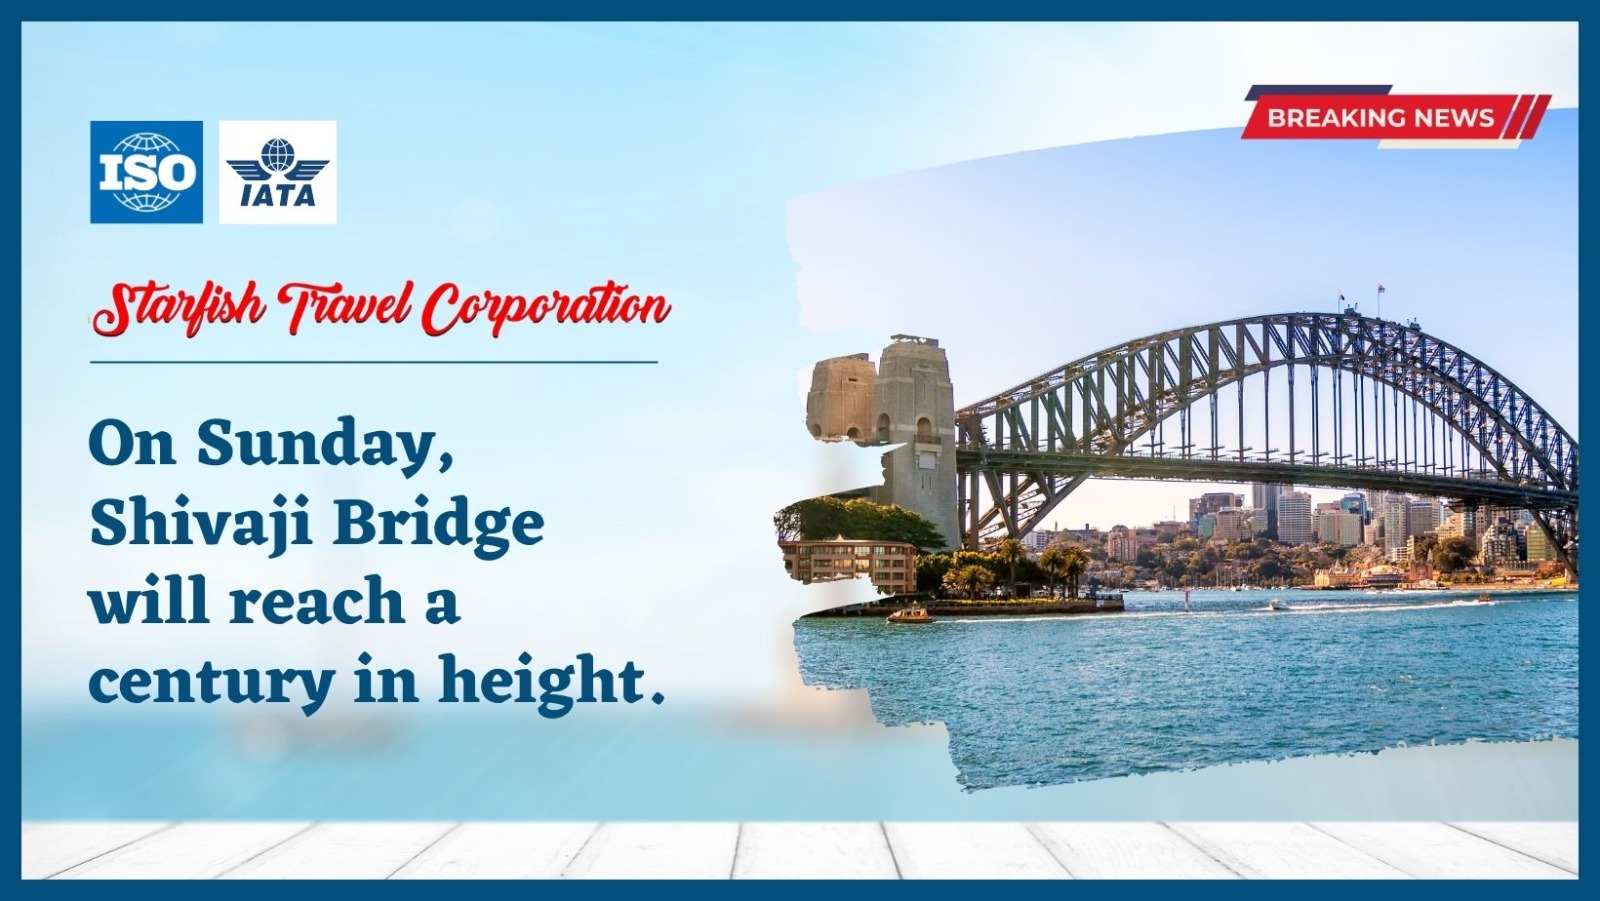 On Sunday, Shivaji Bridge will reach a century in height.